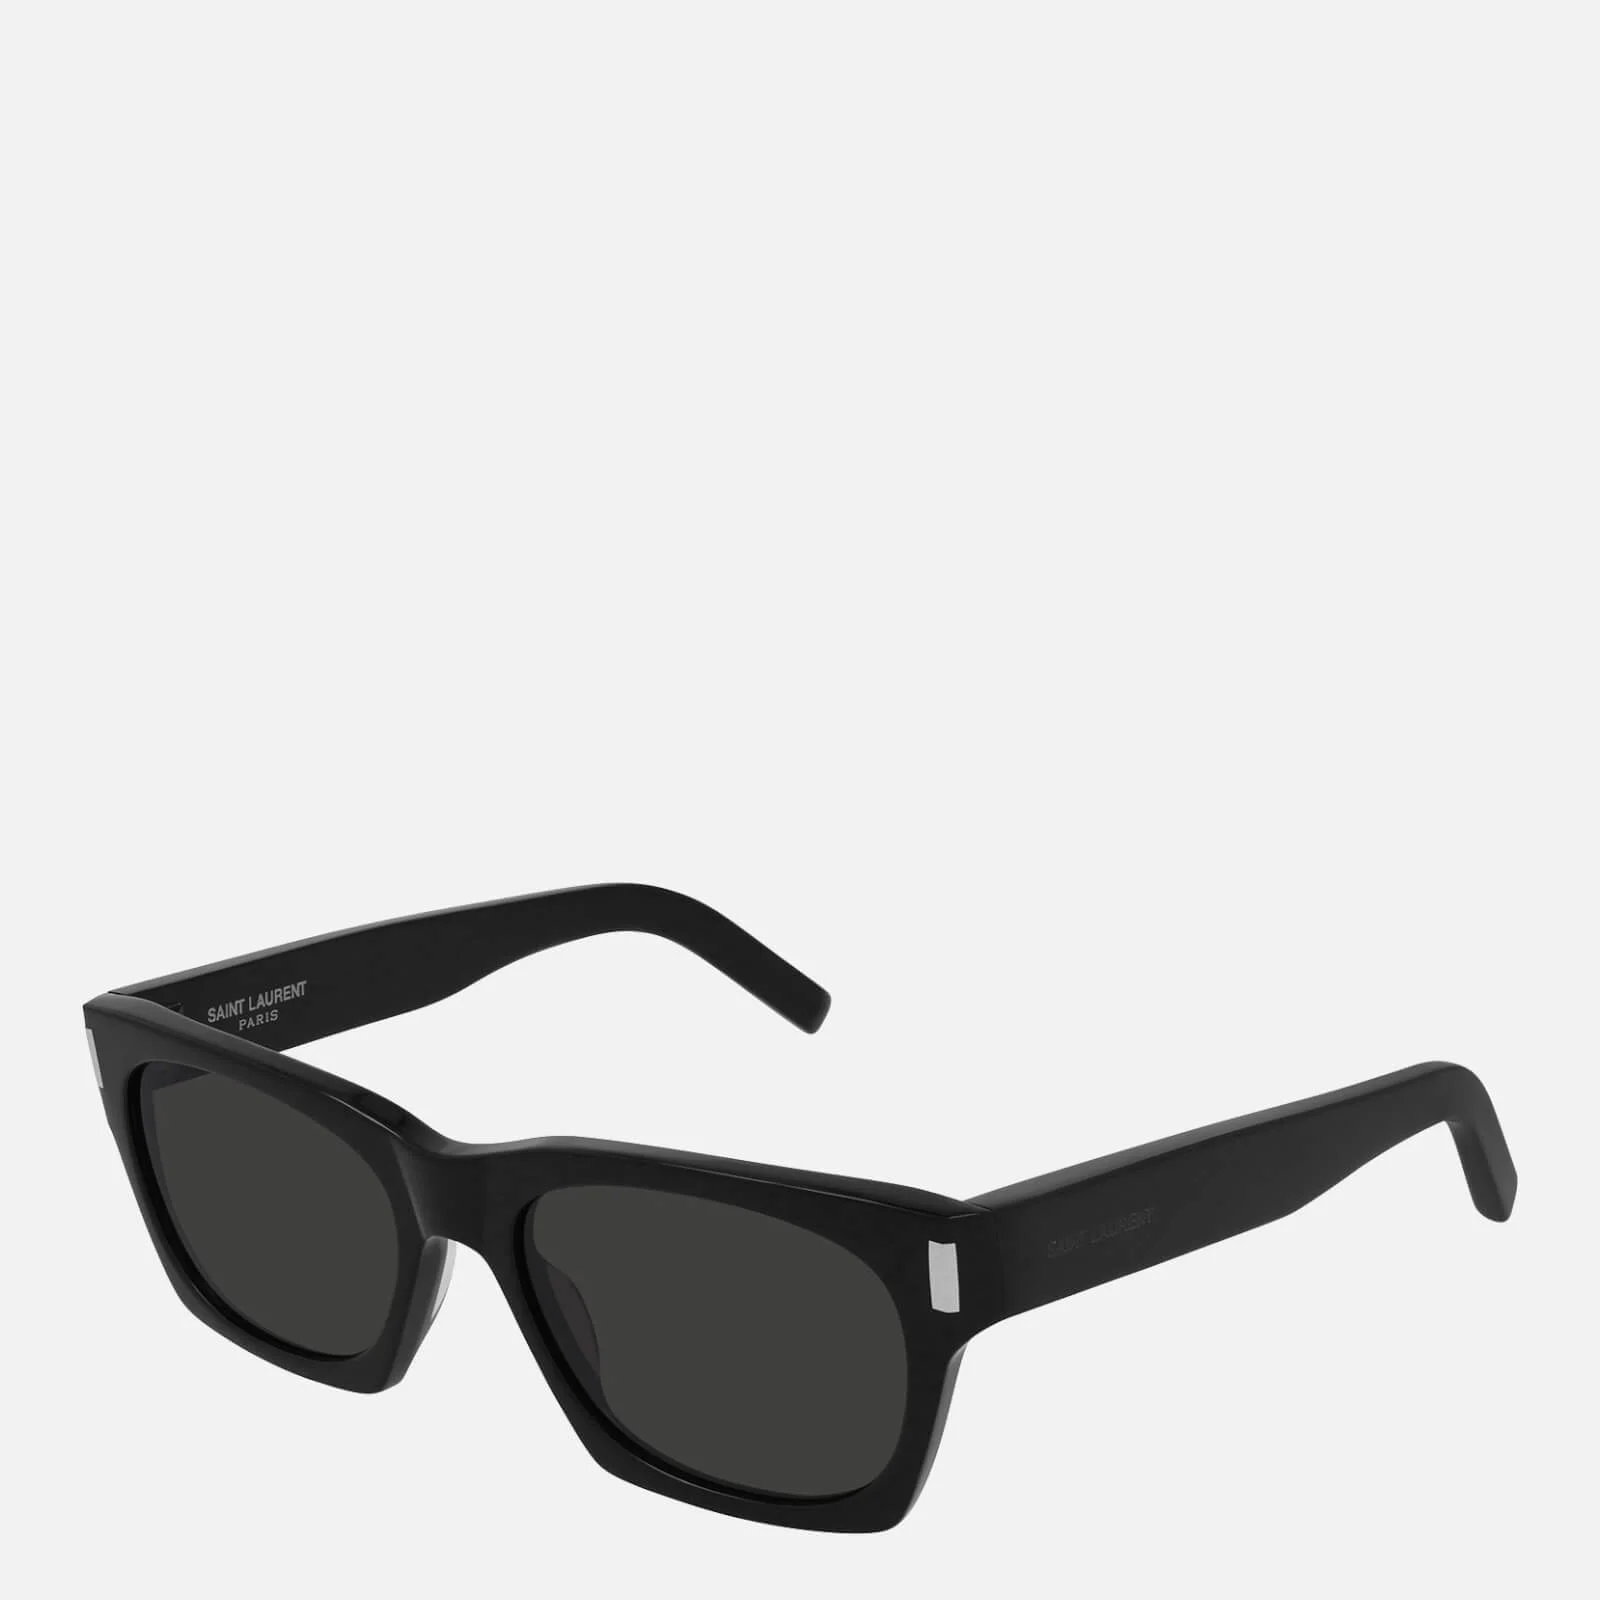 Saint Laurent Women's Rectangle Sunglasses - Black Image 1